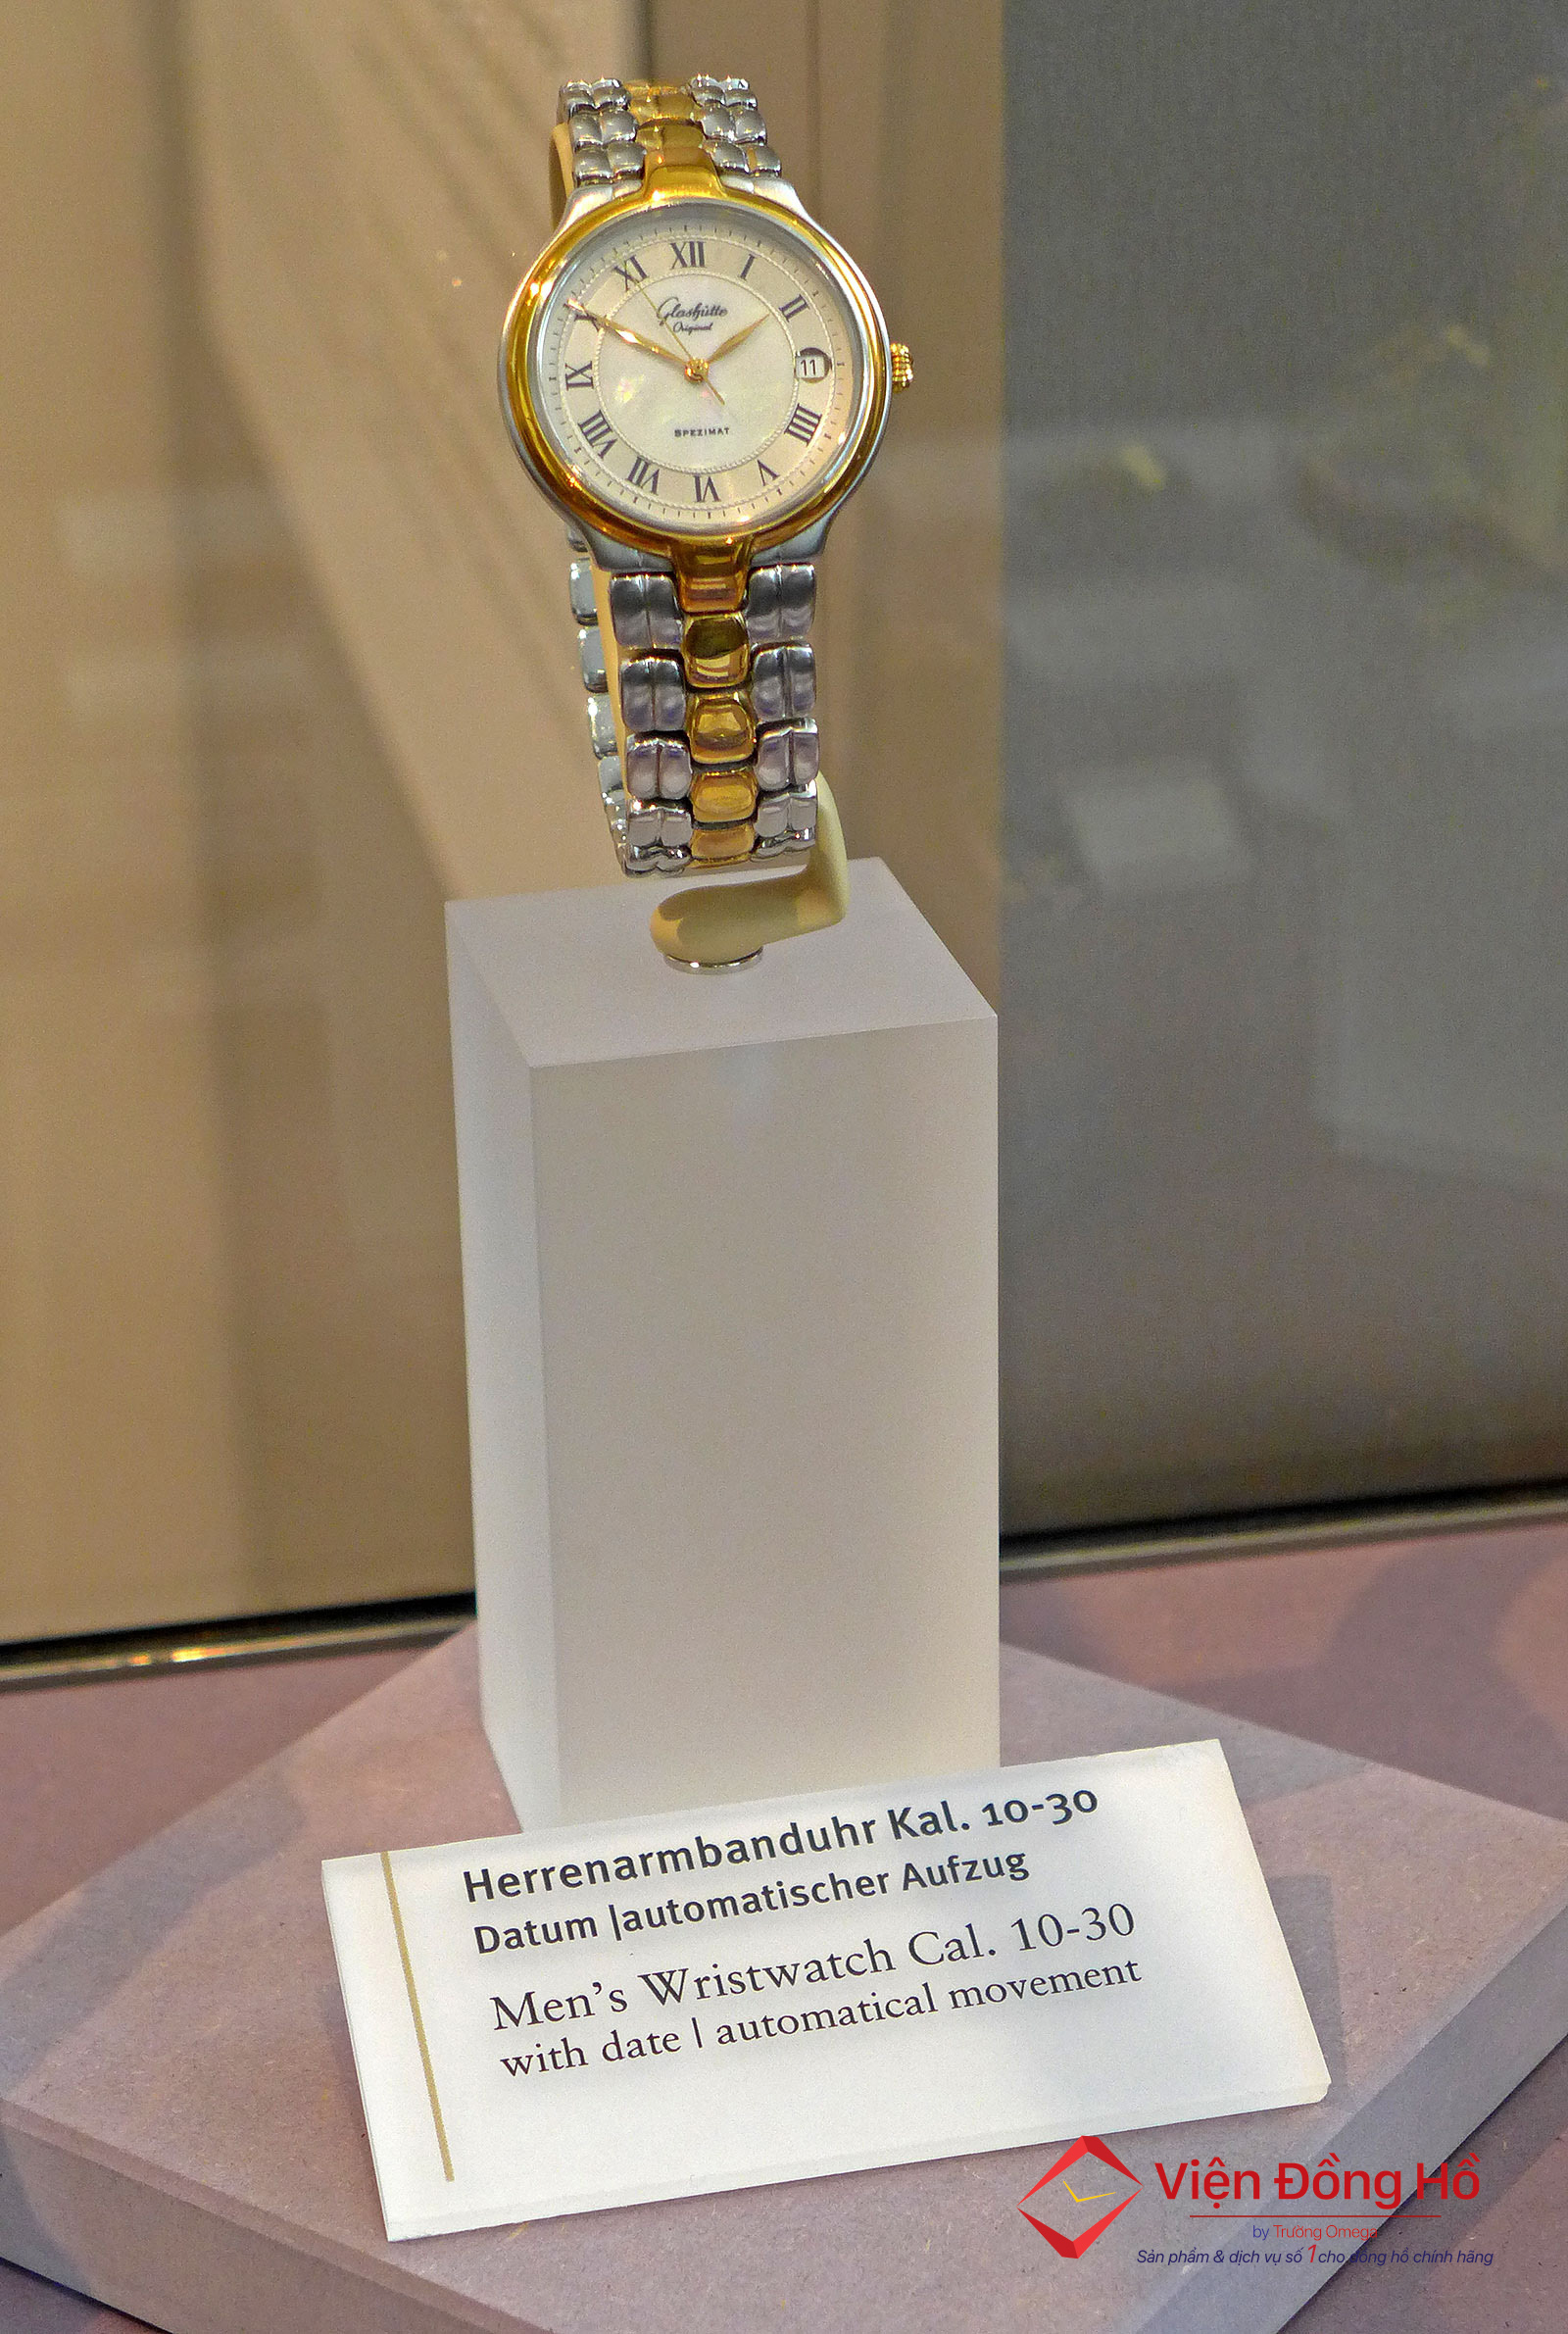 German Watch Museum - Tham quan bao tang dong ho Duc 16